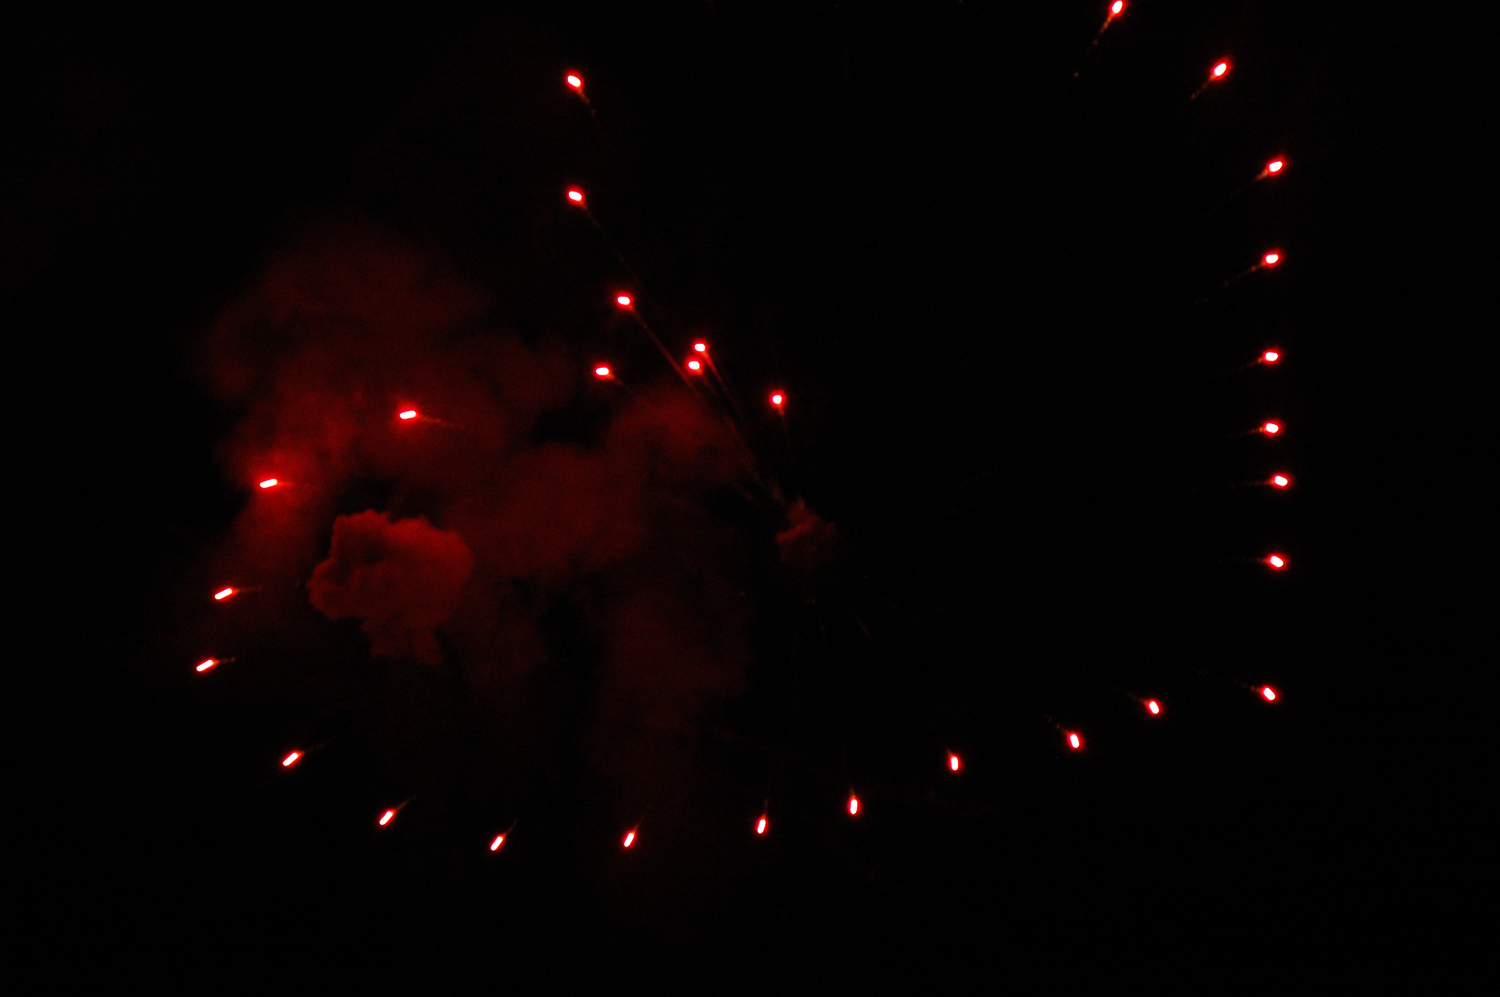 tamamura-fireworks-from-japan--keren